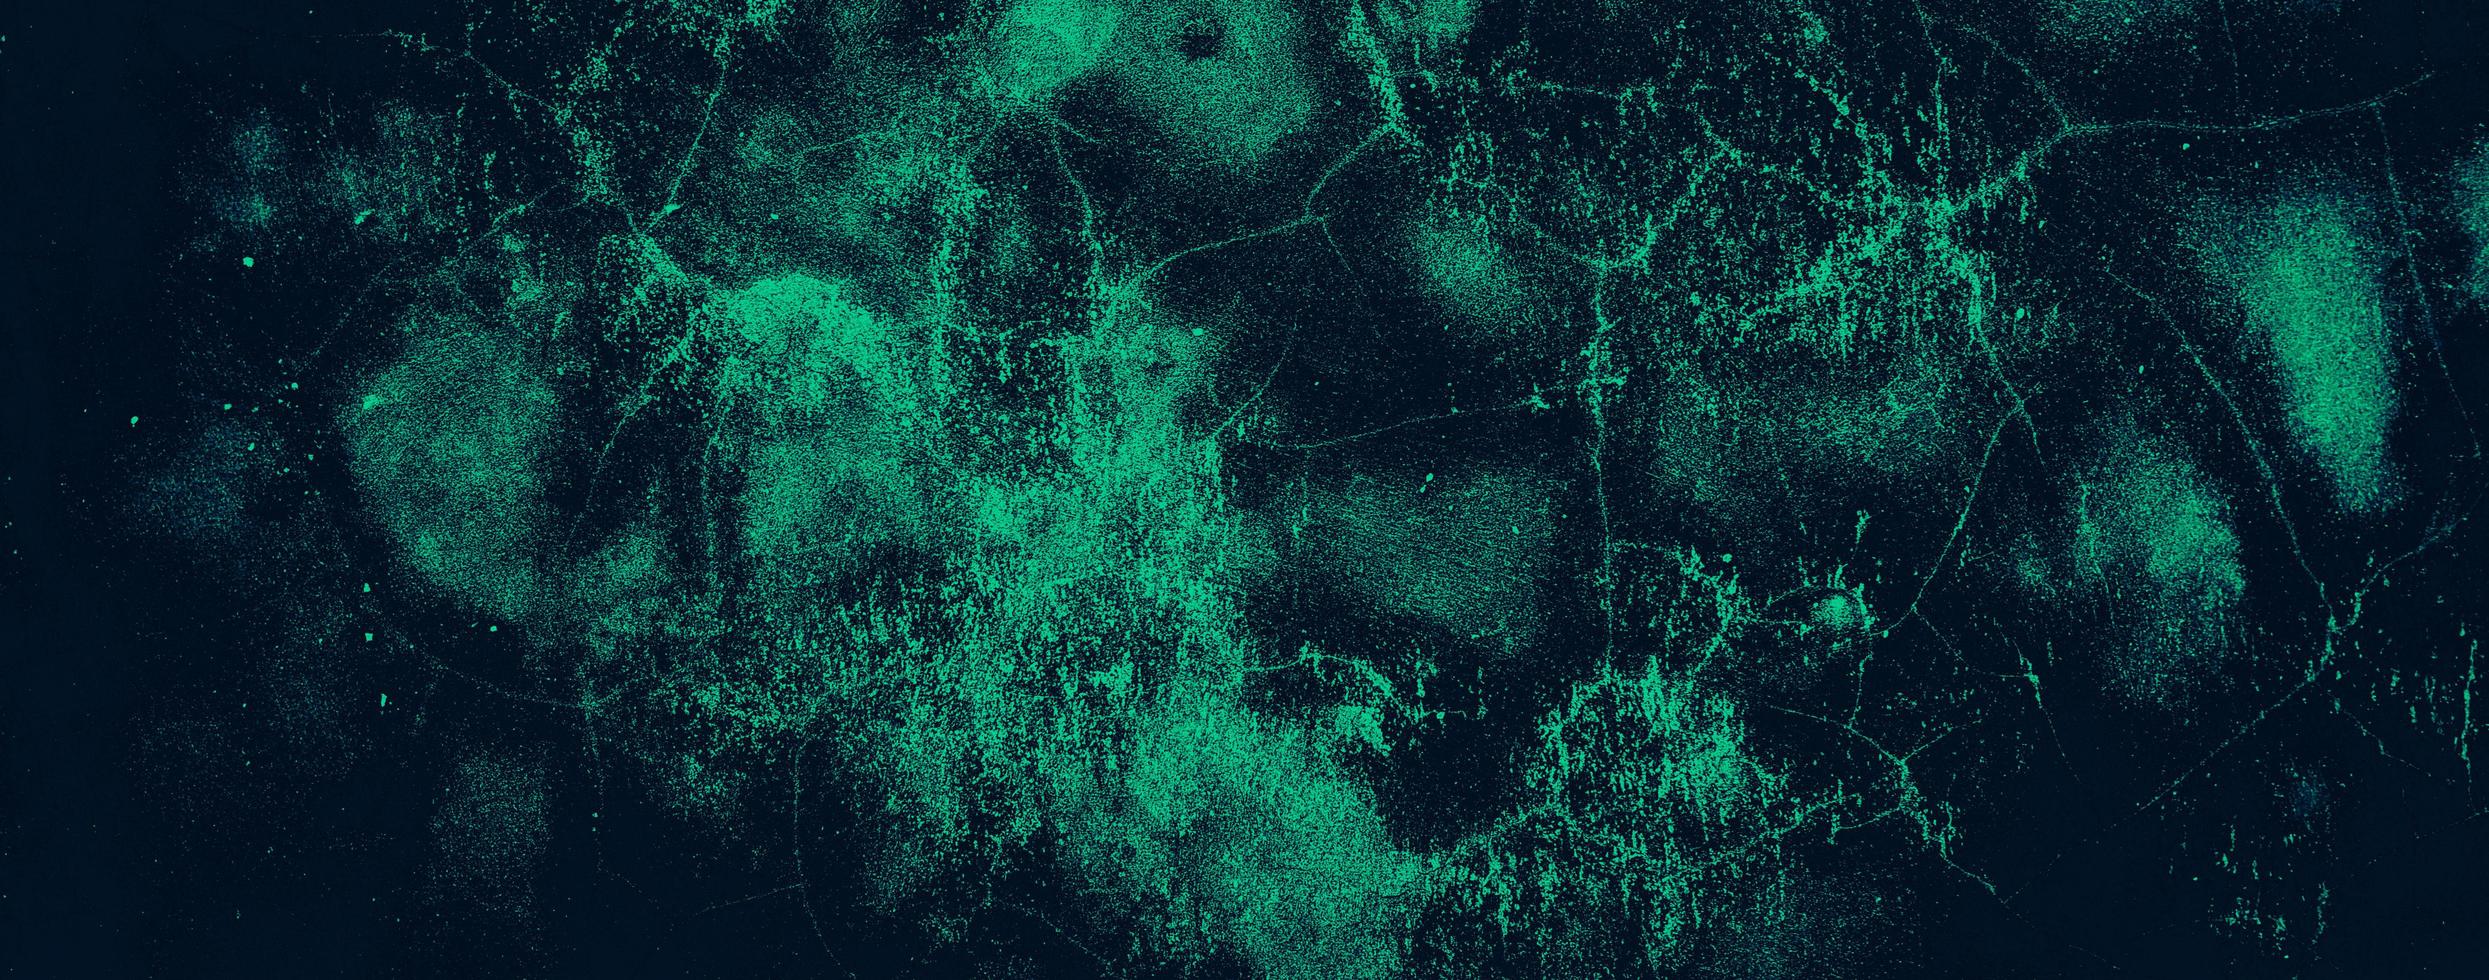 Grunge abstrakte alte Zementbetonwand Textur Hintergrund mit dunkelgrüner Farbe foto